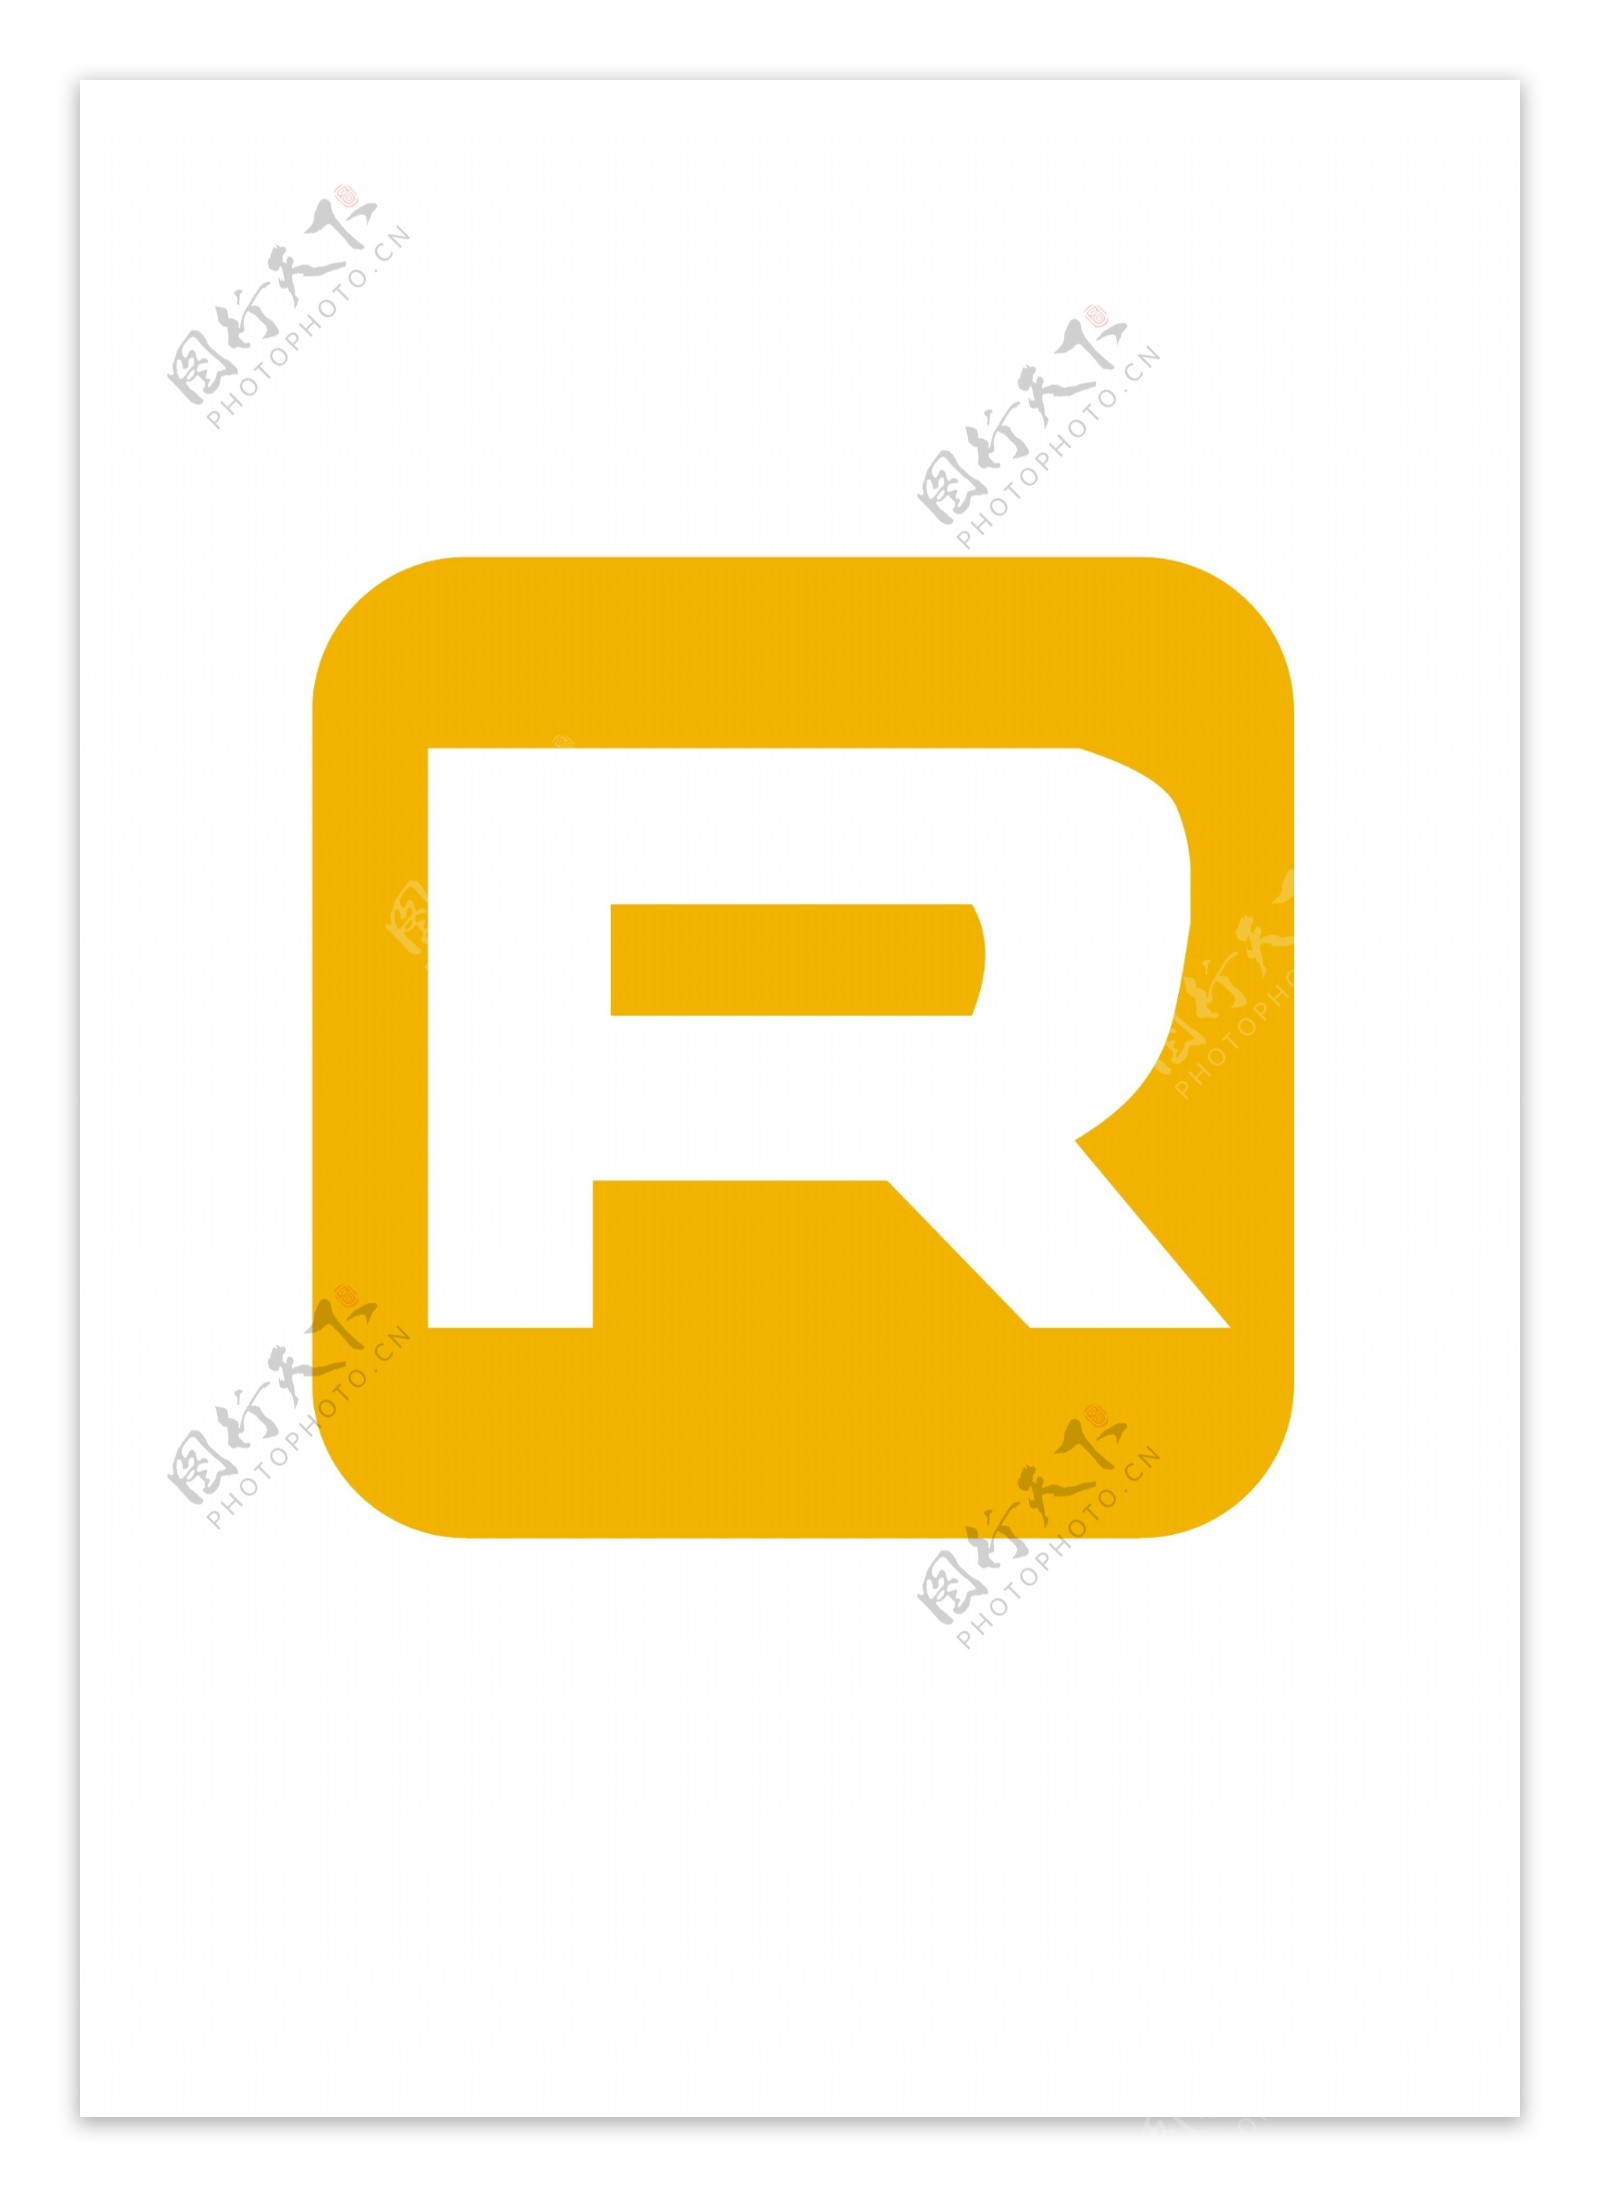 RinhoSistemaslogo设计欣赏RinhoSistemas网络公司标志下载标志设计欣赏